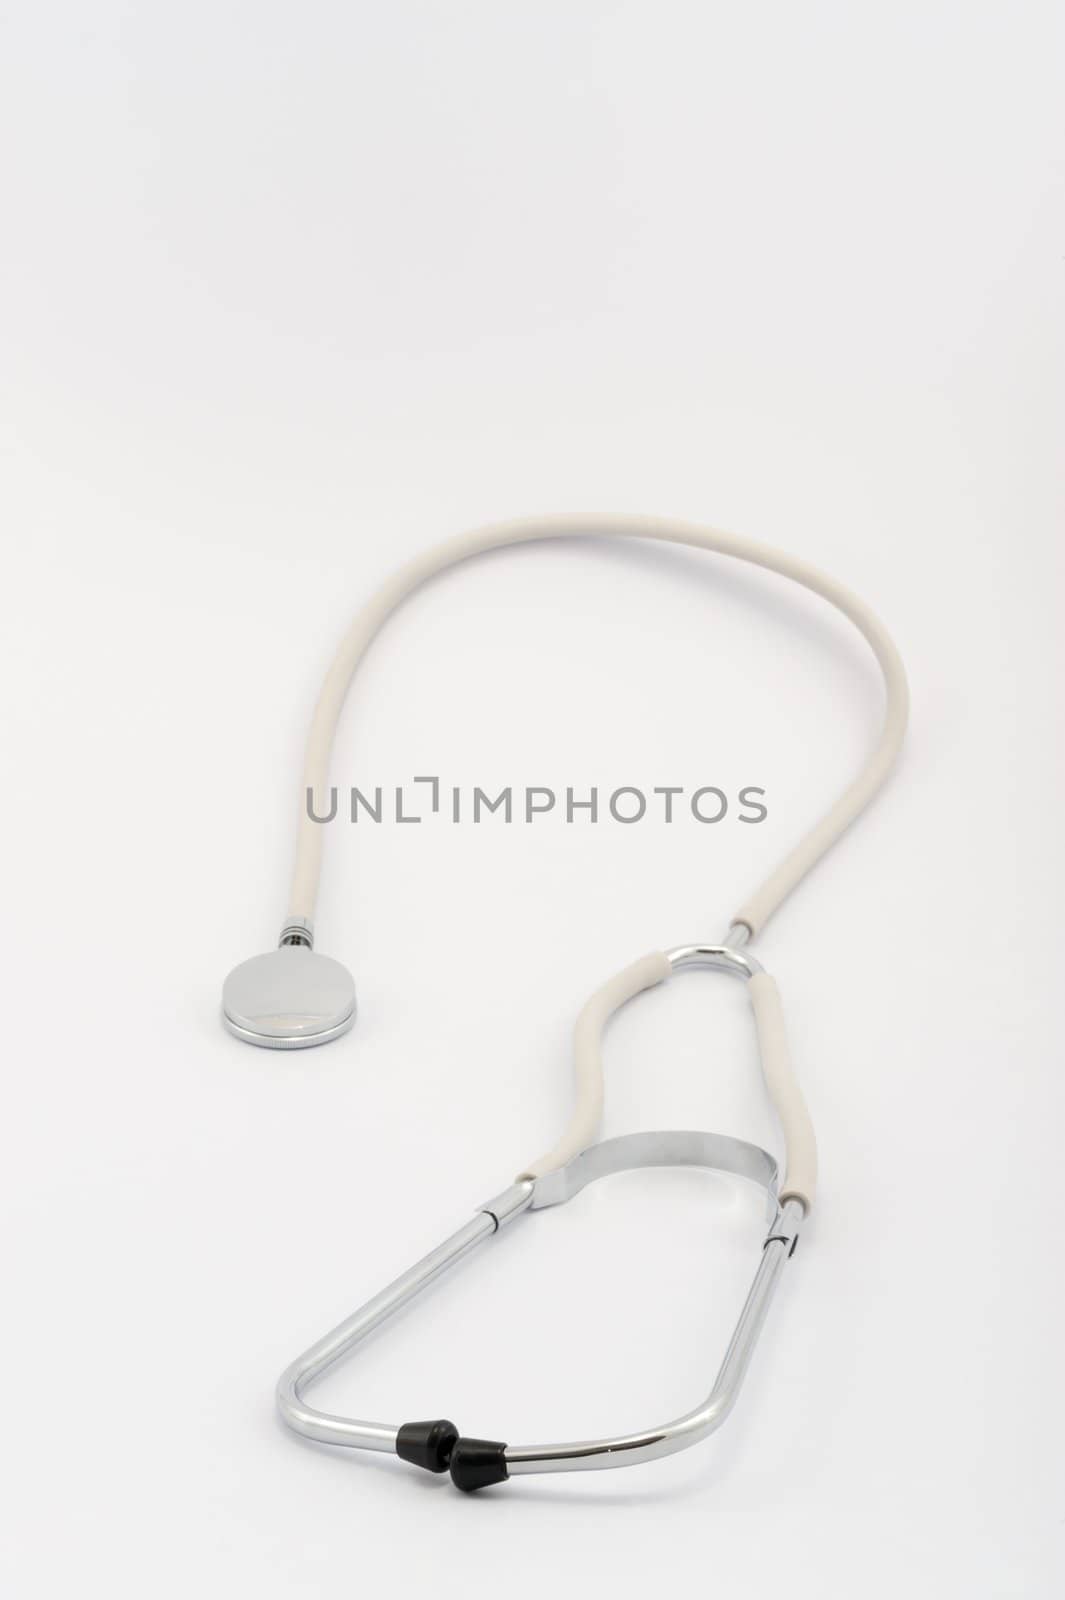 stethoscope close up on white background